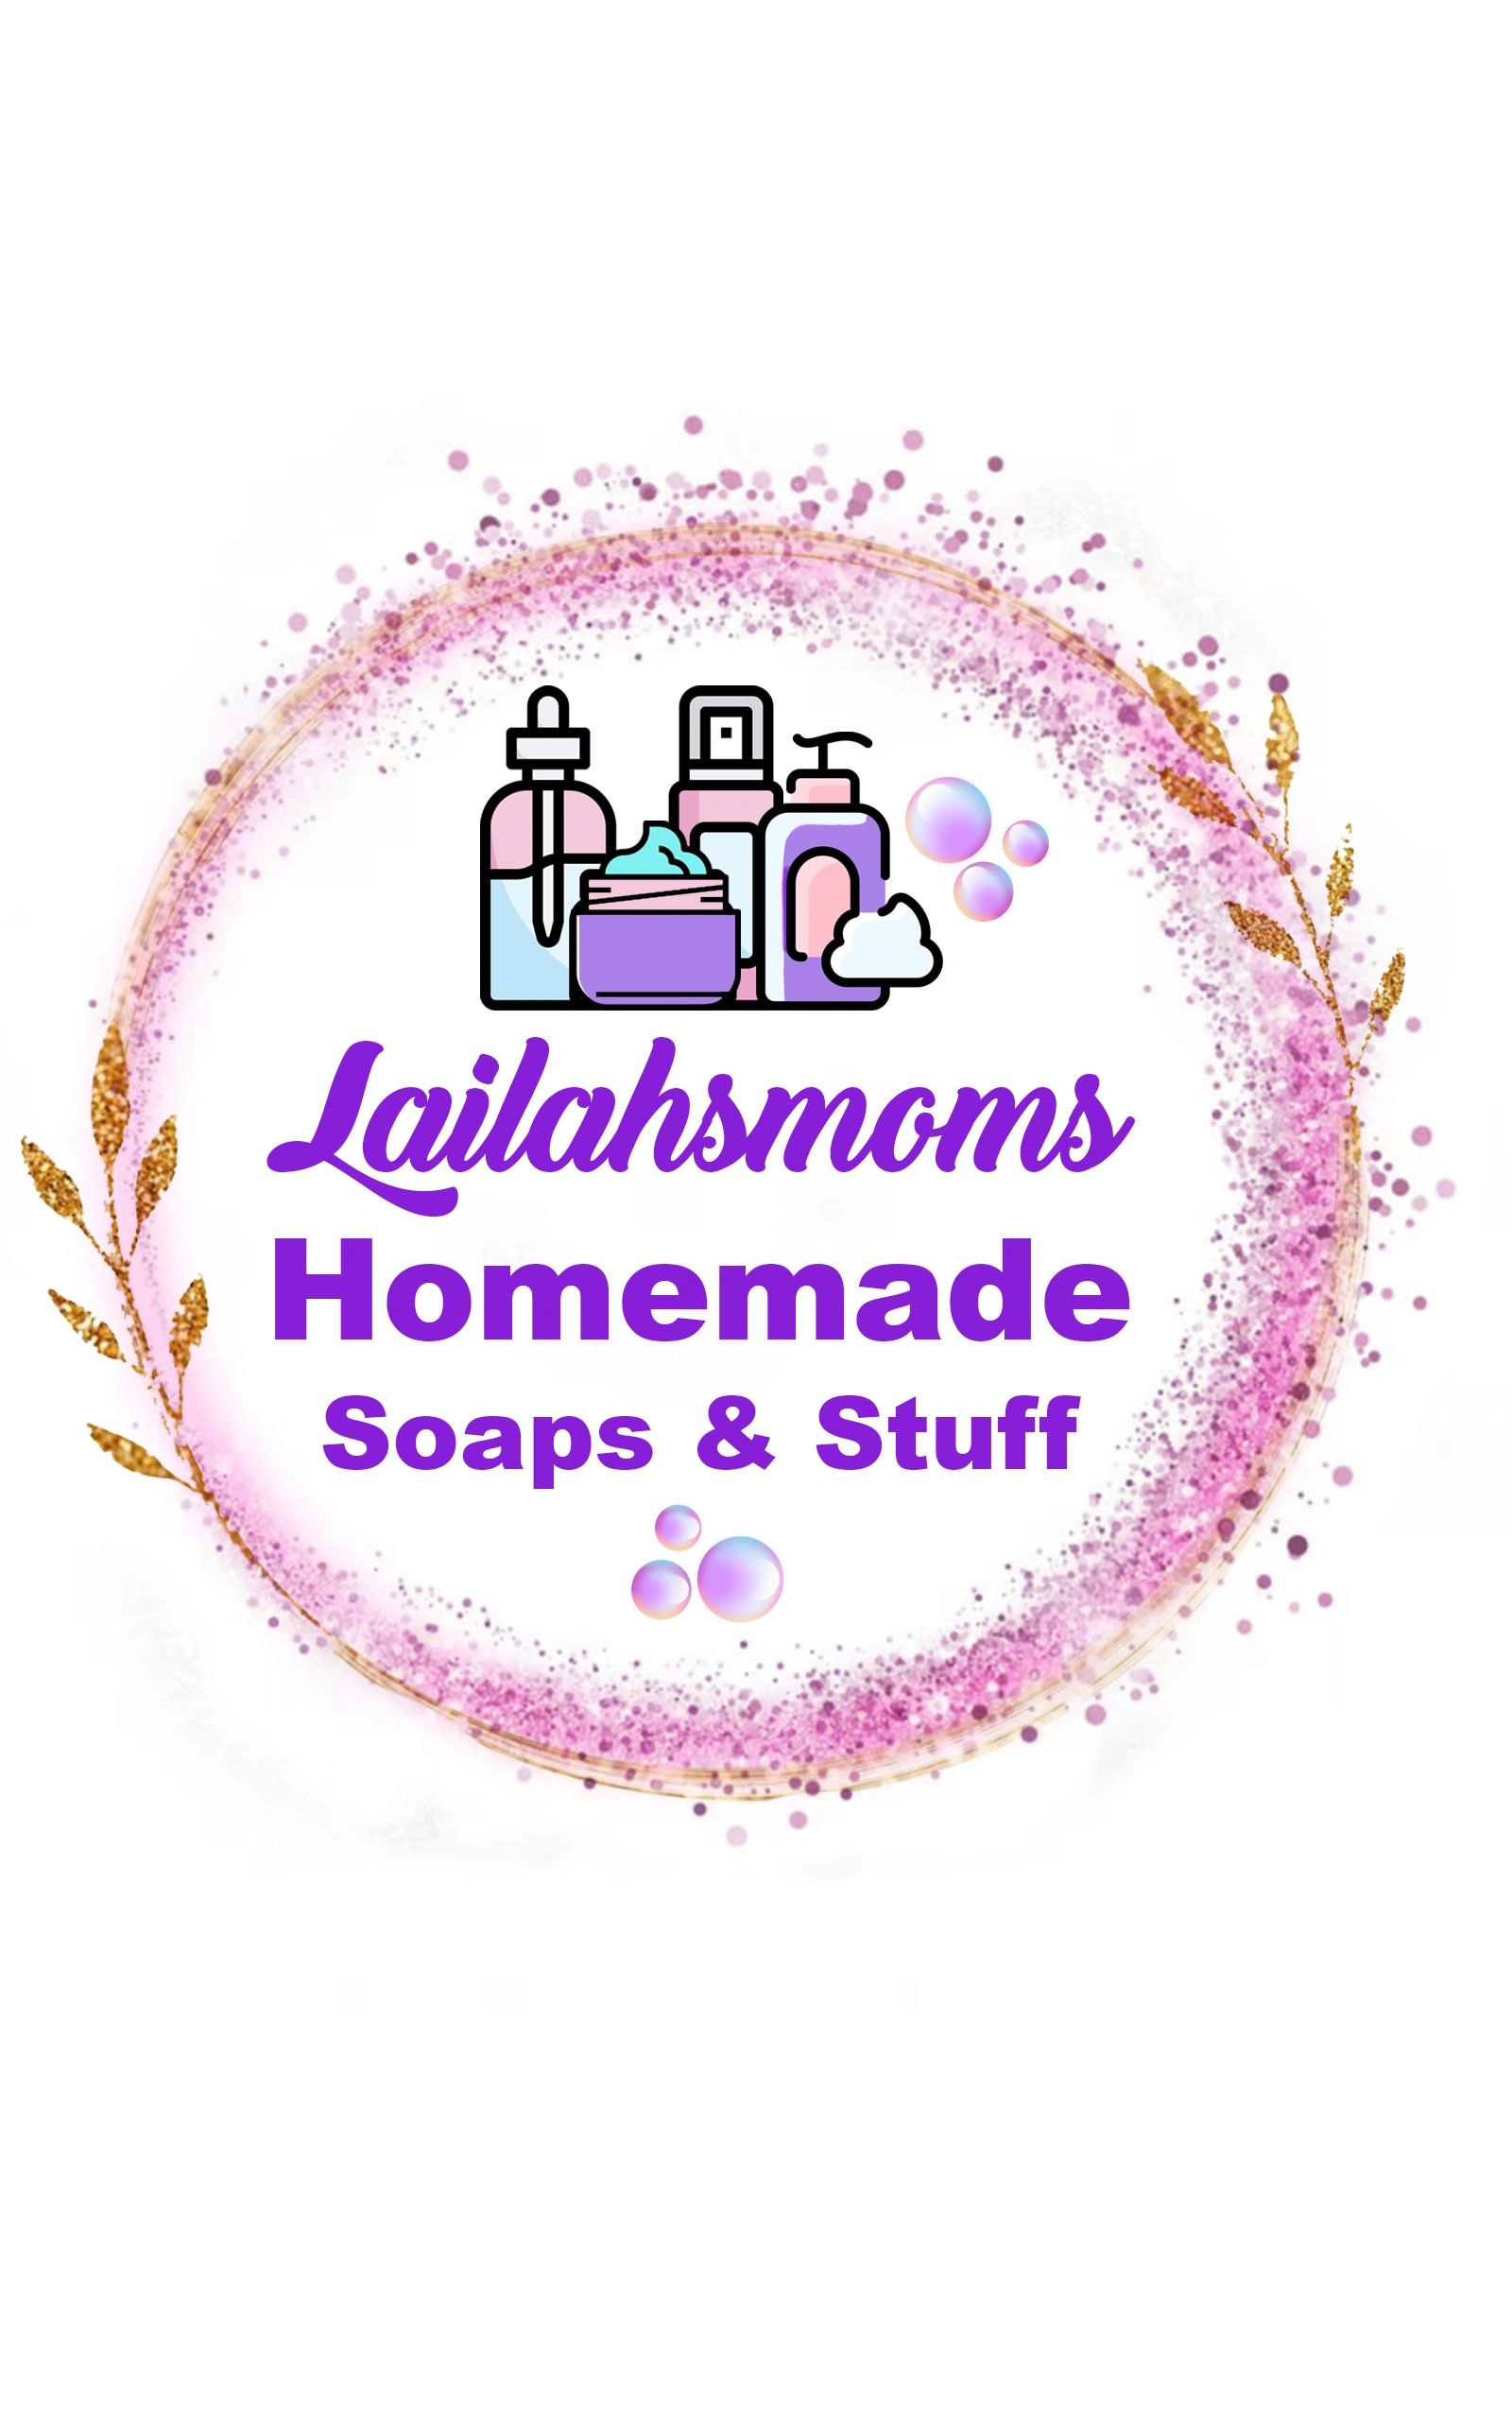 Lailahsmoms Homemade Soaps & Stuff - Shower Gel, Skin Care